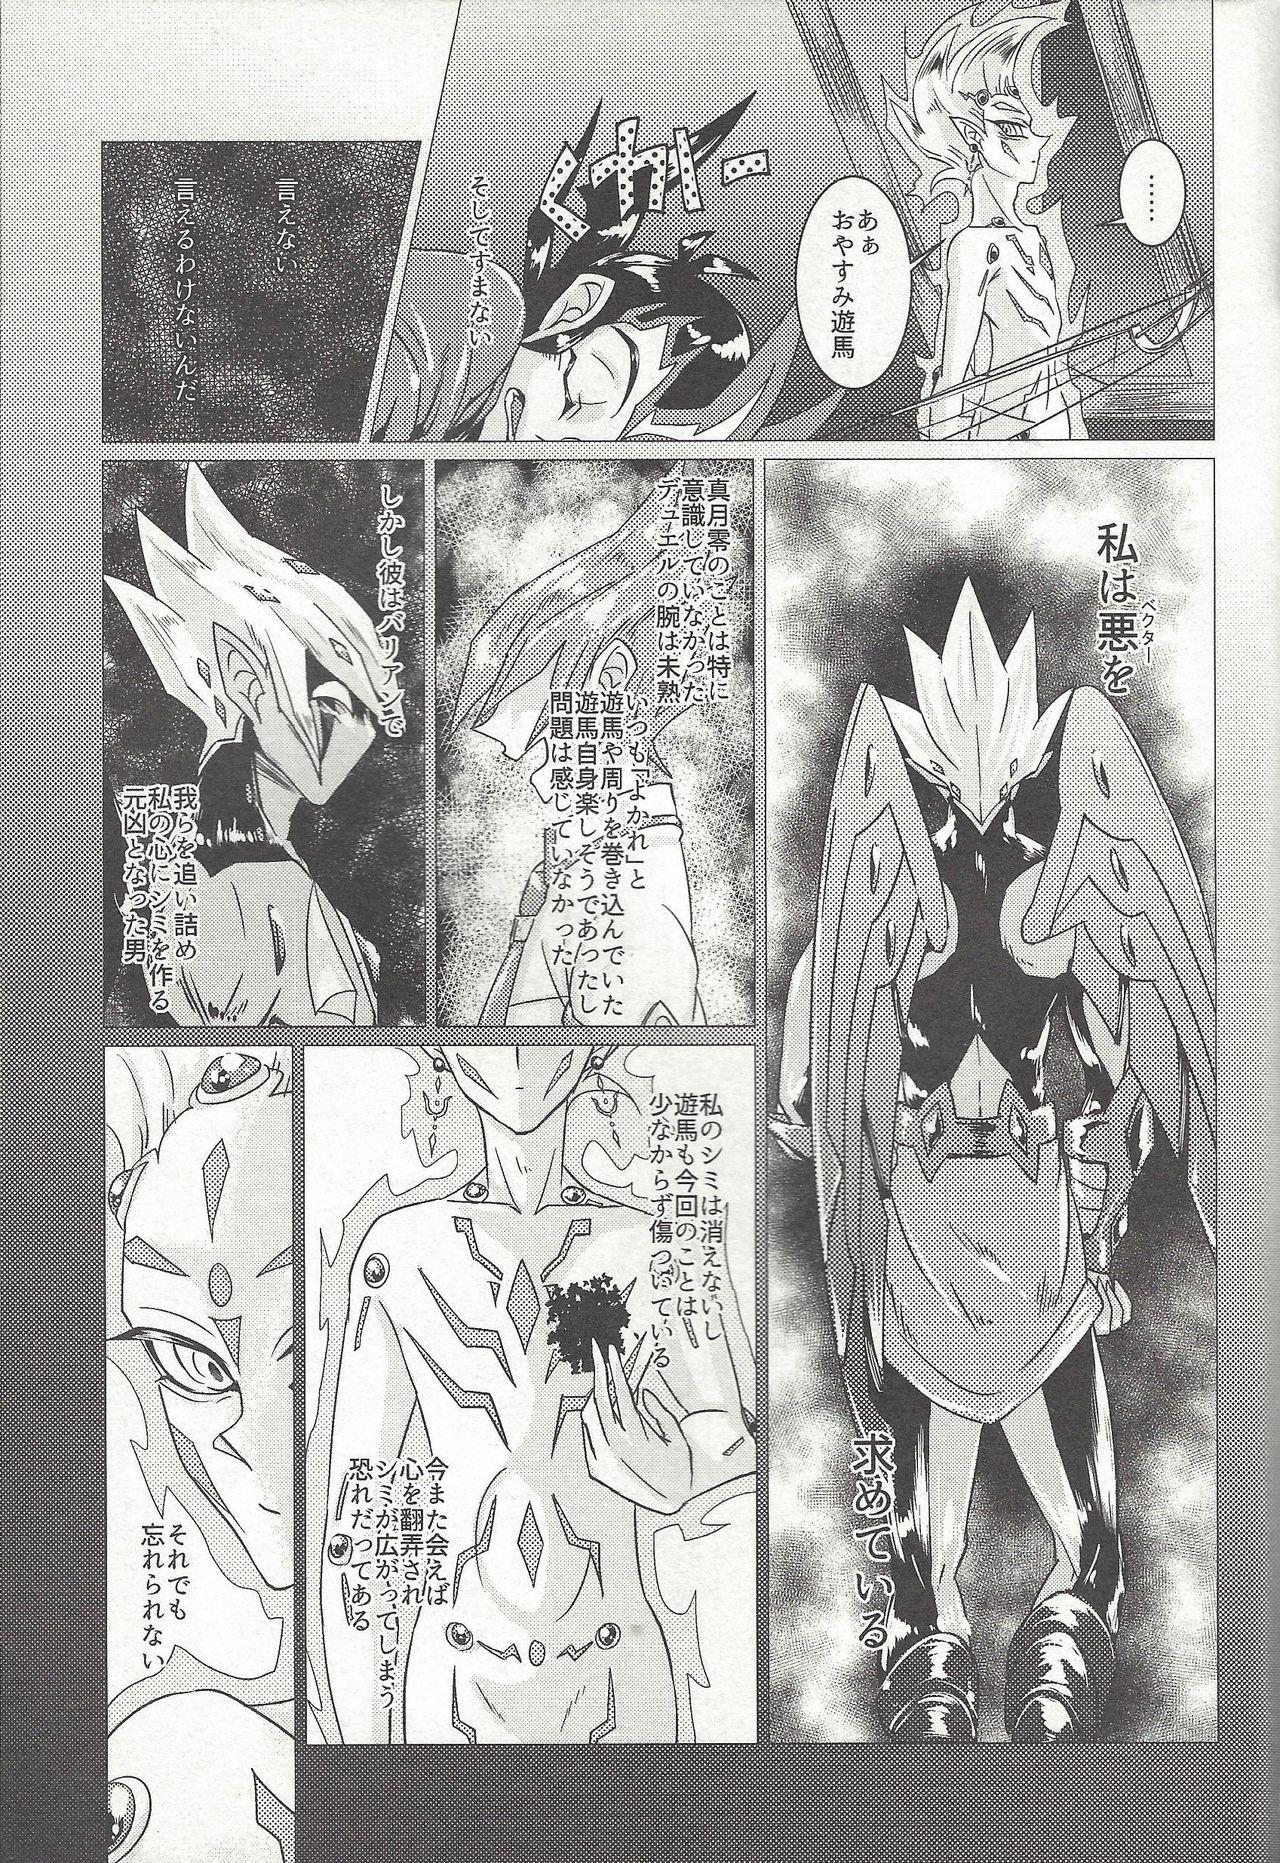 Pinay Shingetsu no yoru ni wa kare ga Kuru - Yu-gi-oh zexal Short - Page 6